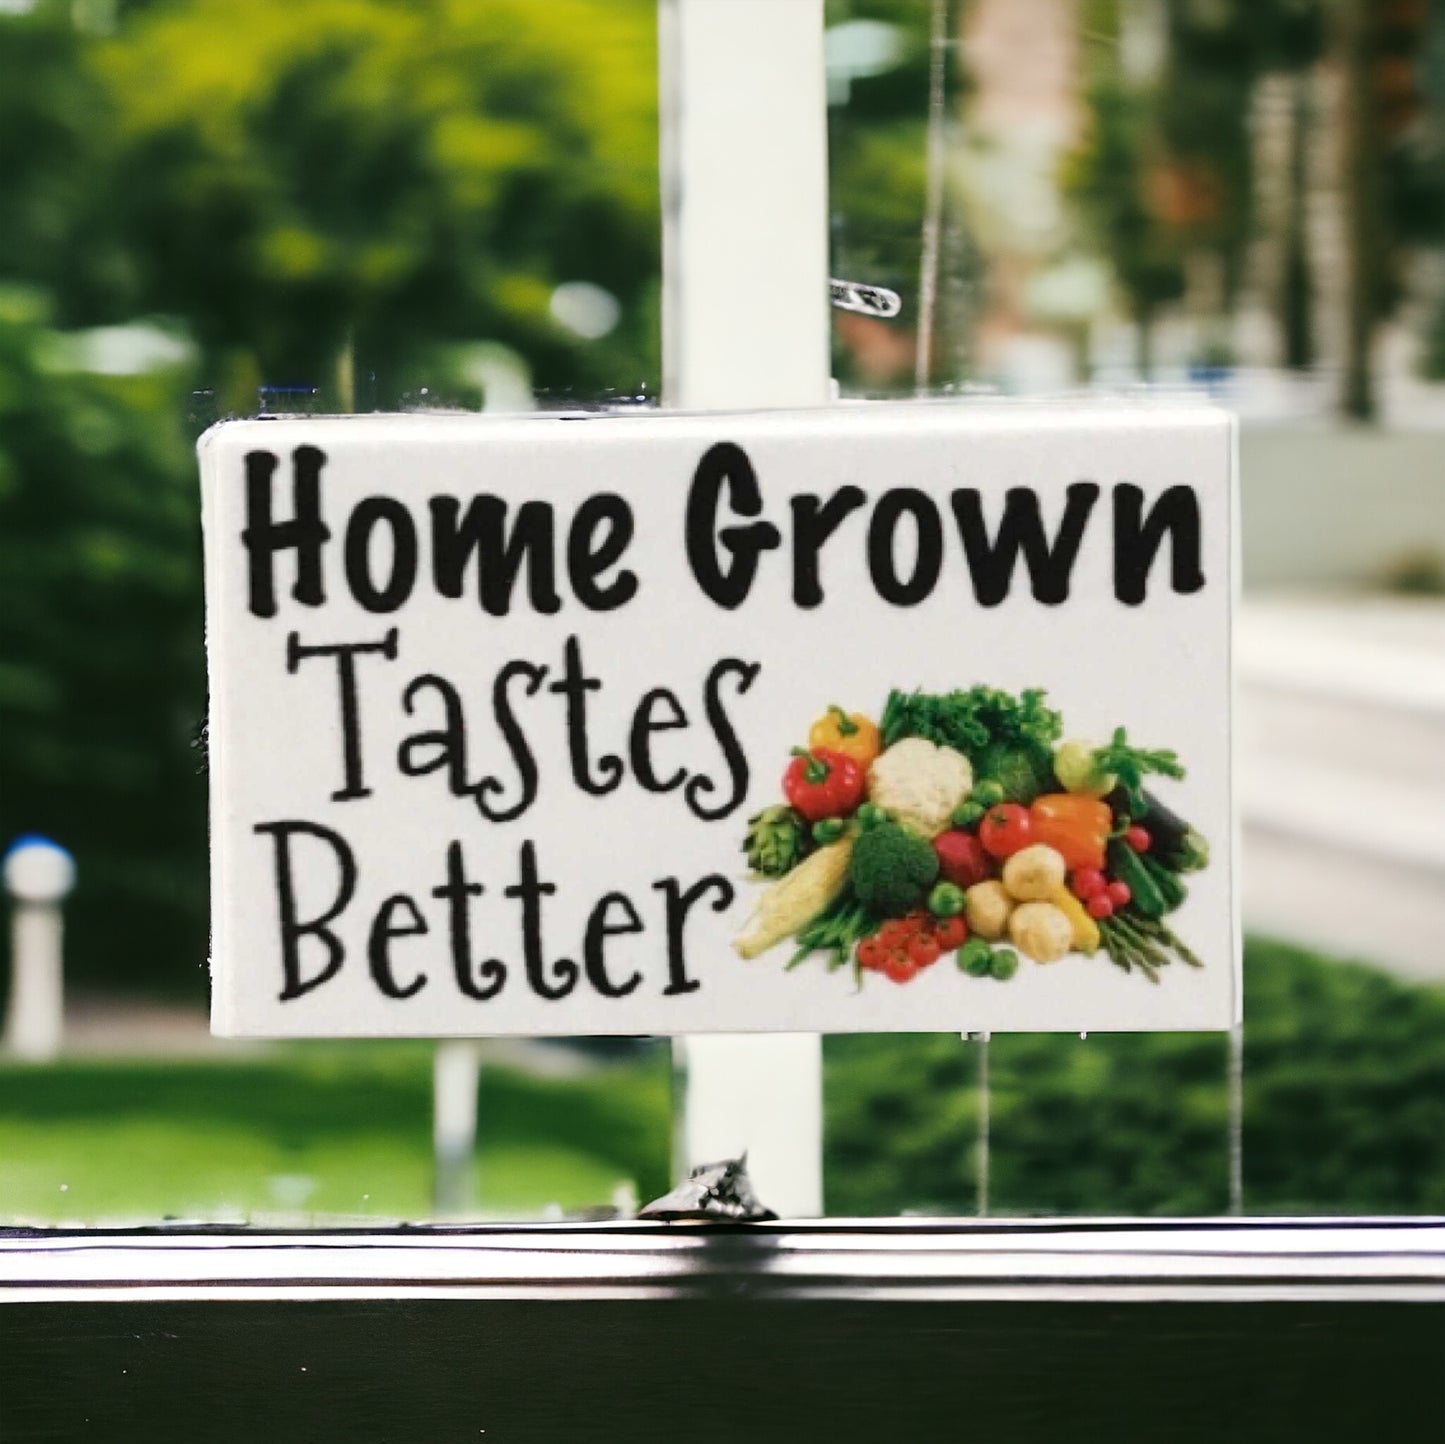 Home Grown Tastes Better Vegetables Garden Sign